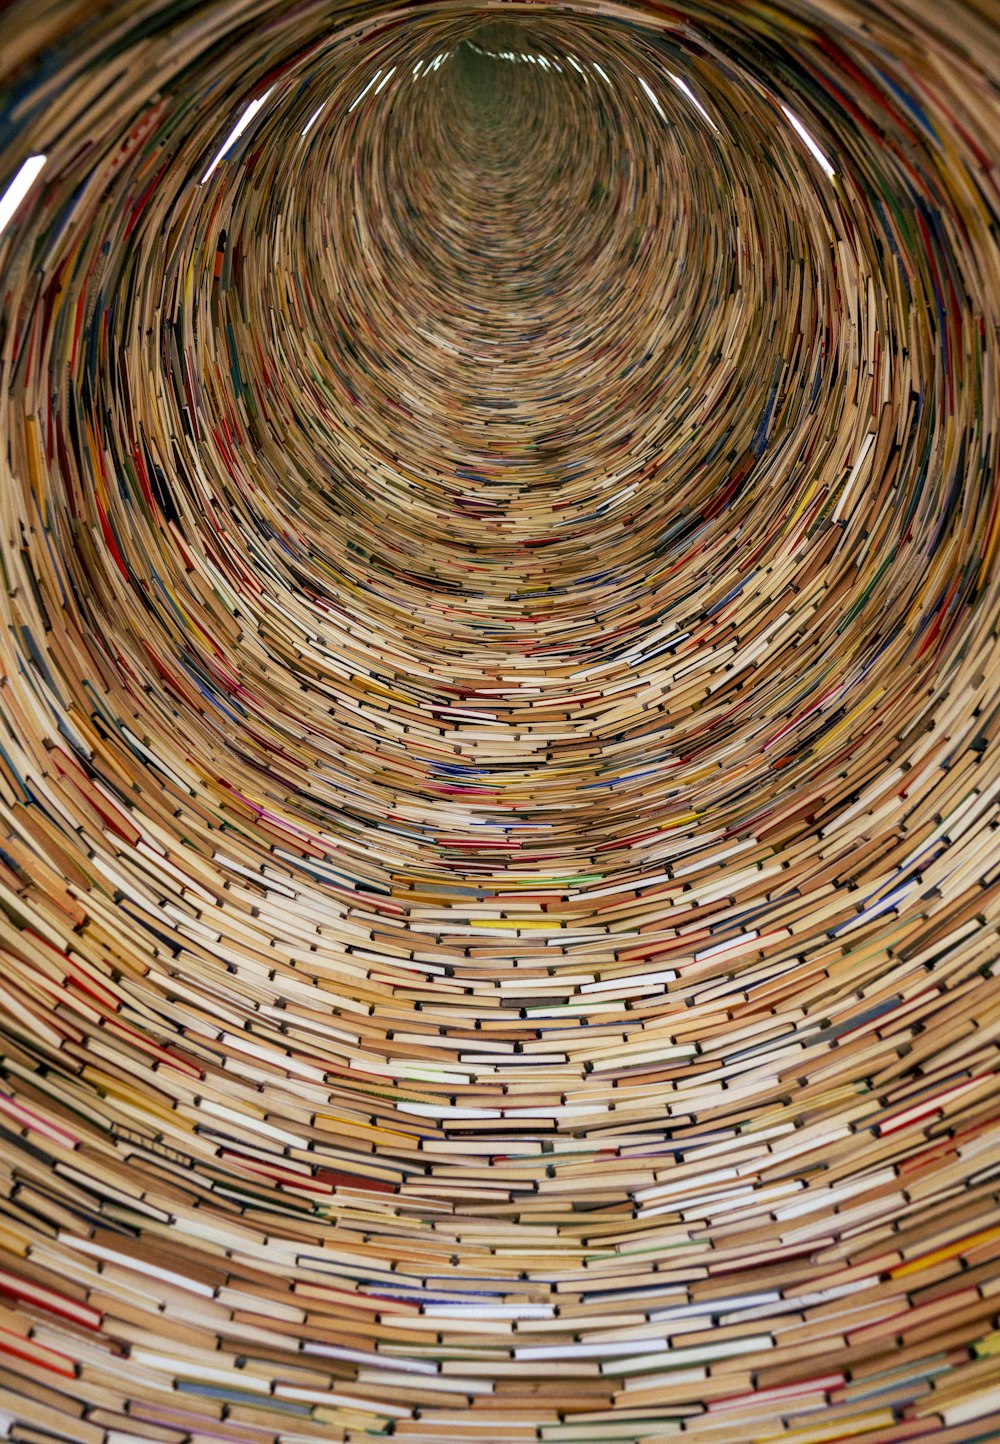 Un objeto circular muy grande hecho de libros